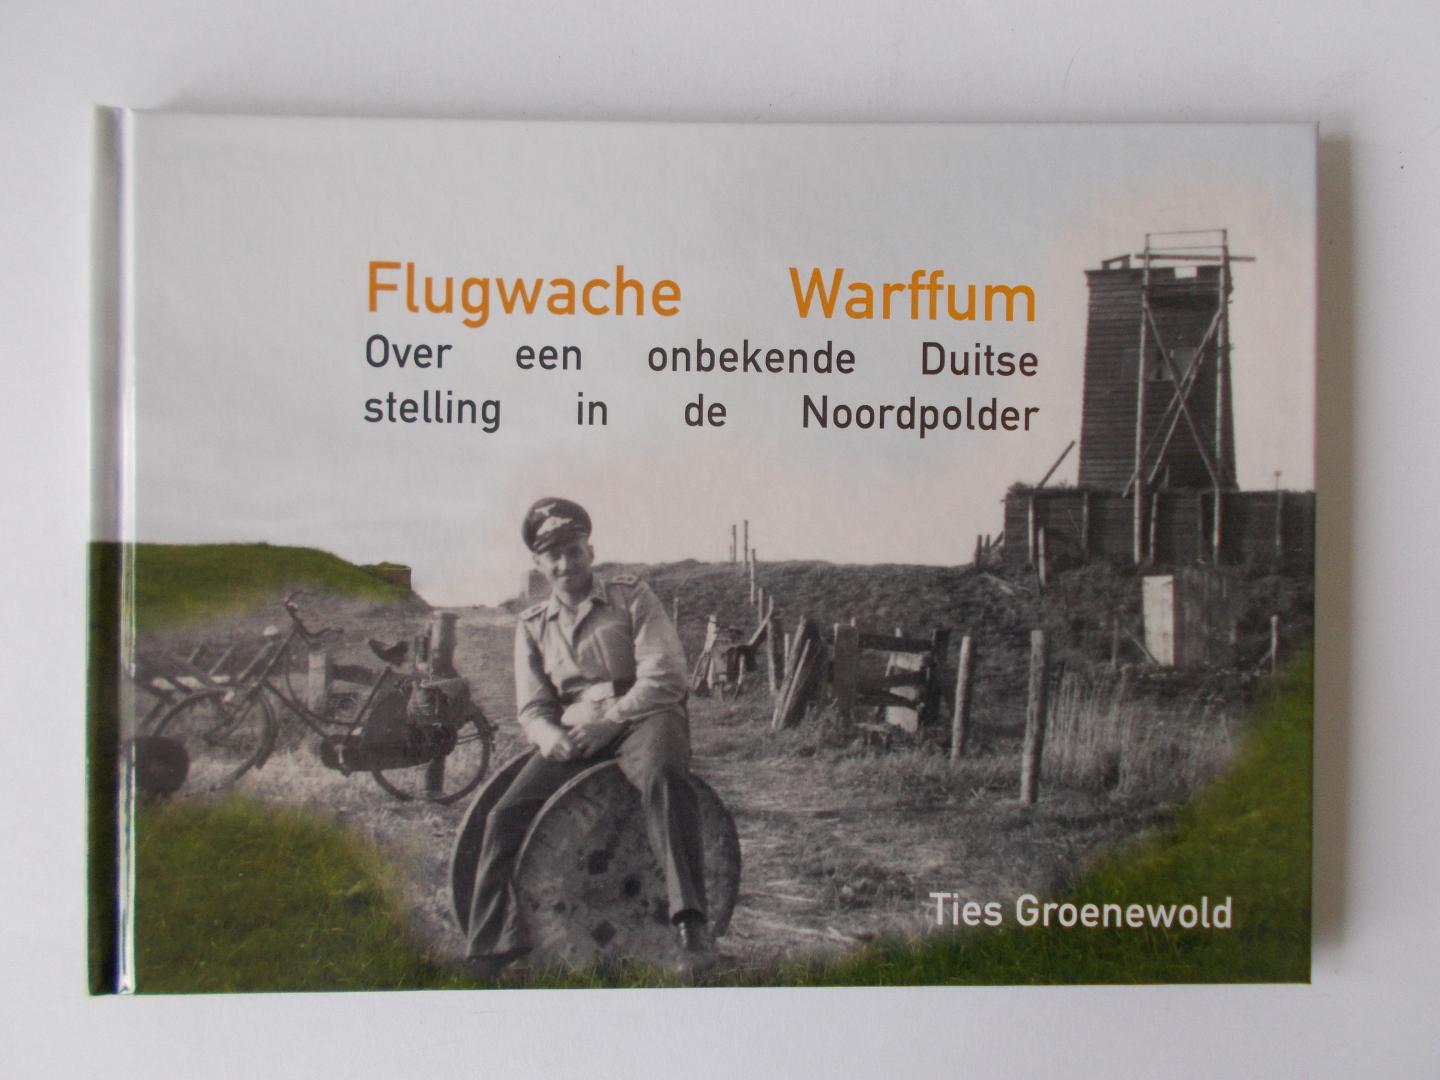 Groenewold, Ties - Flugwache Warffum. Over een onbekende Duitse stelling in de Noordpolder.